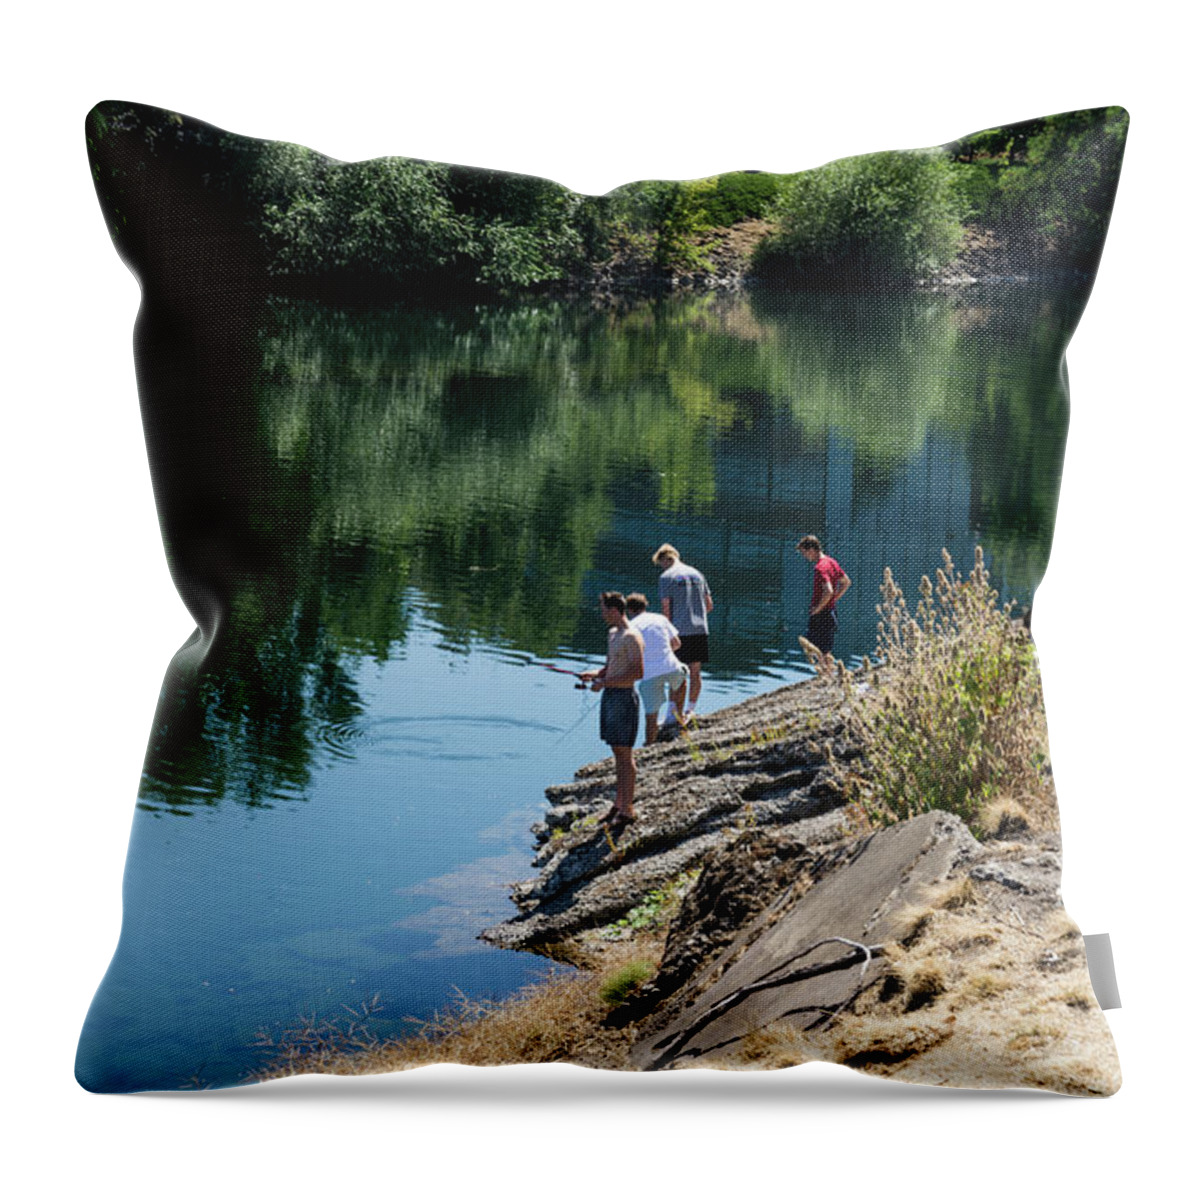 Fishing The Spokane River Throw Pillow featuring the photograph Fishing the Spokane River by Tom Cochran